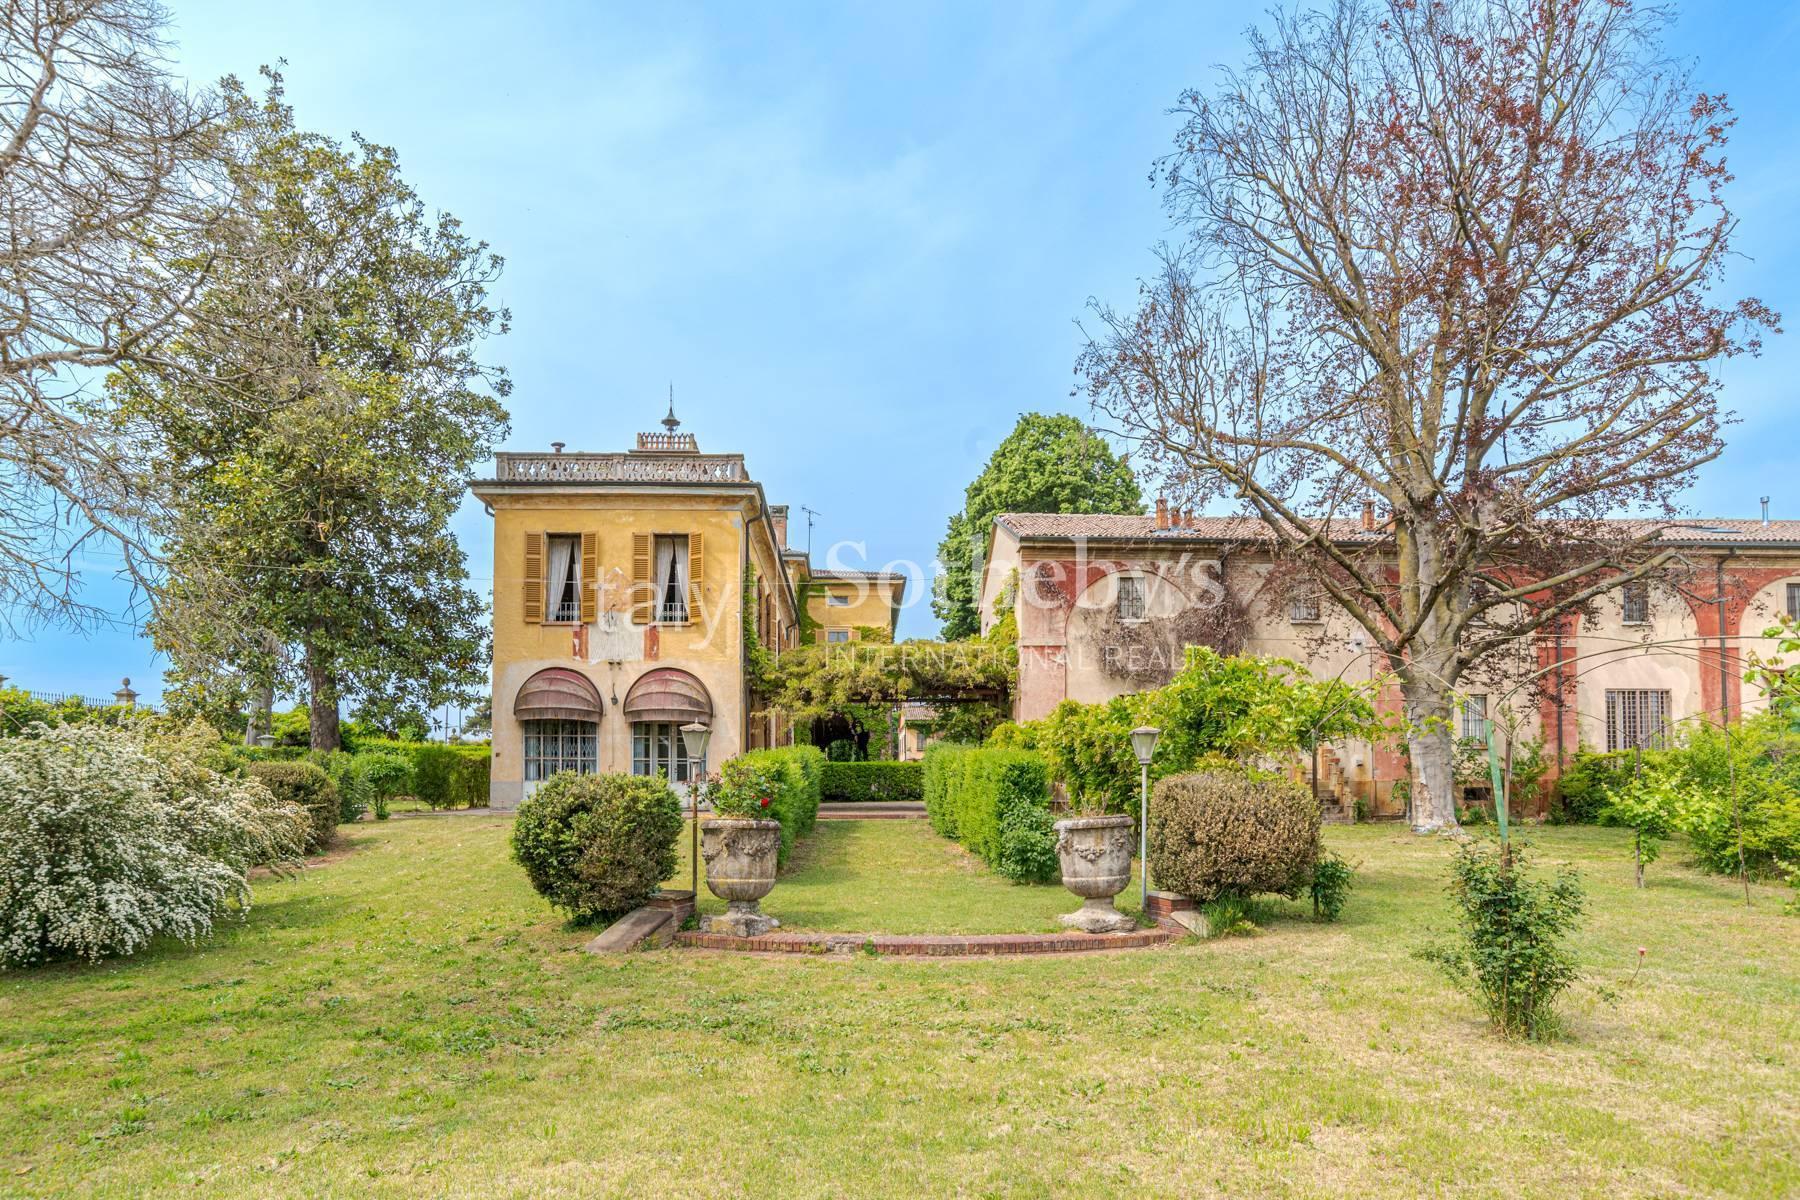 Cascina Bella - Villa du 18ème siècle avec parc à Oltrepo' Pavese - 11